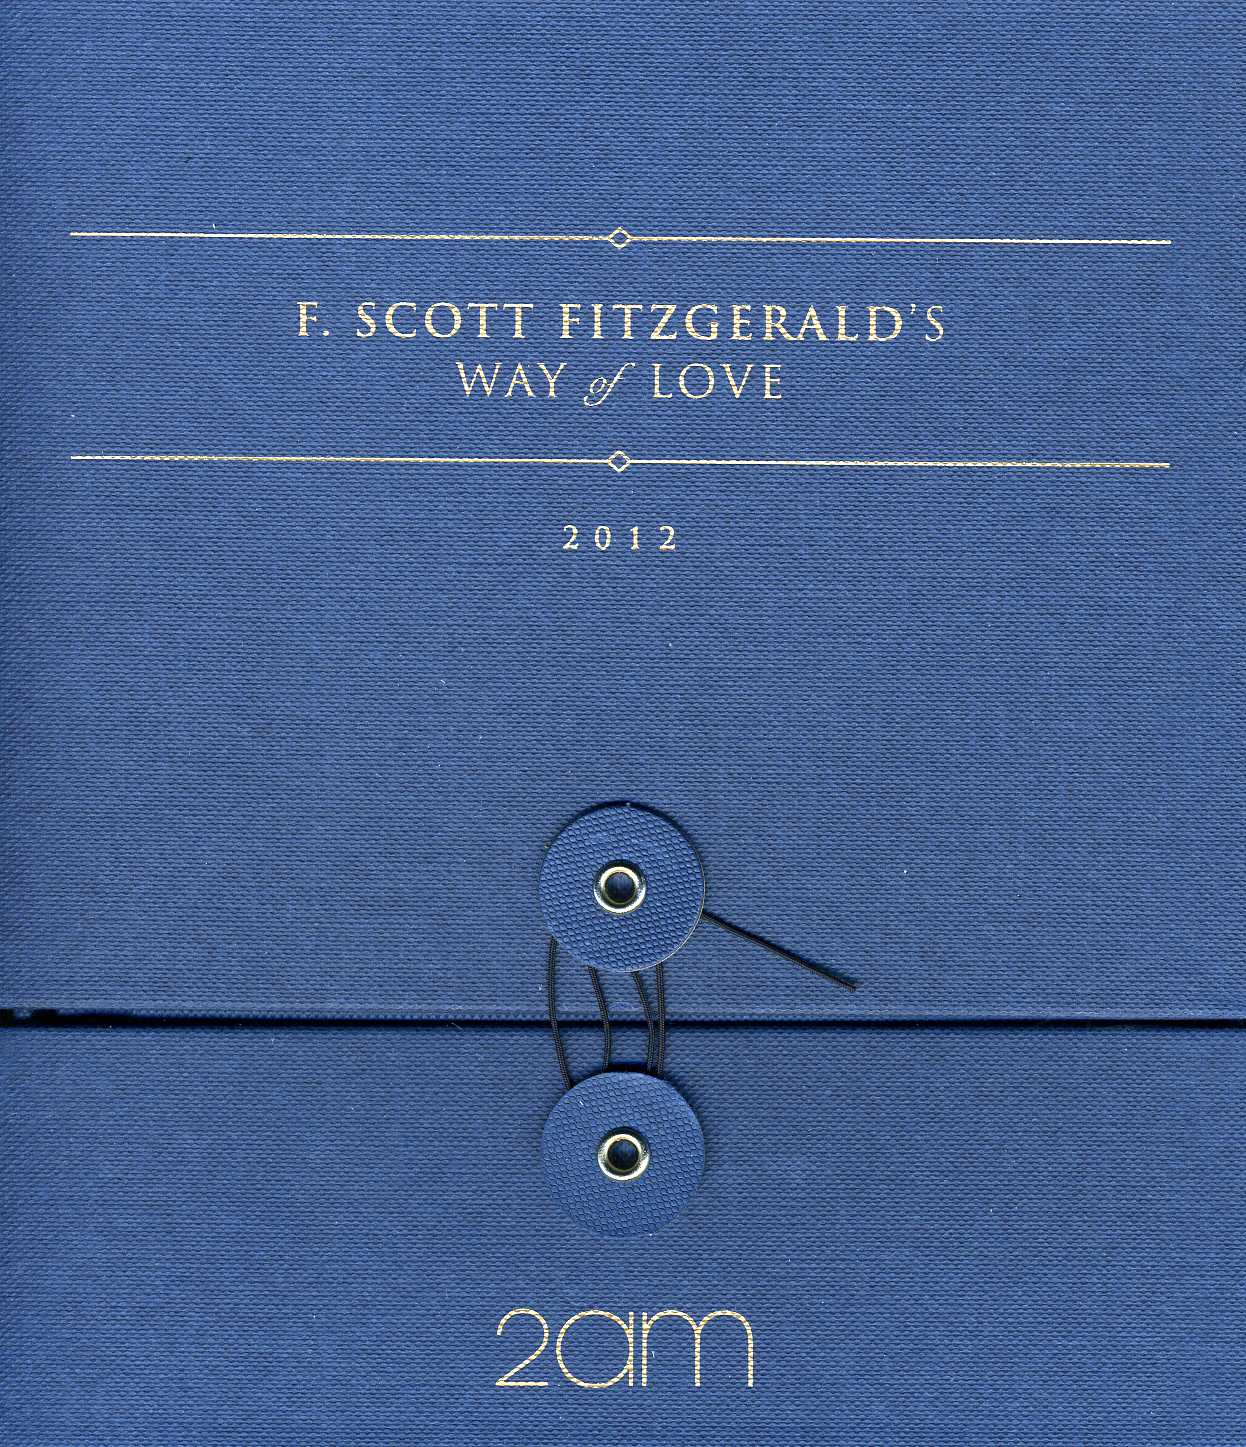 F.SCOTT FITZGERALD'S WAY OF LOVE (ASIA)